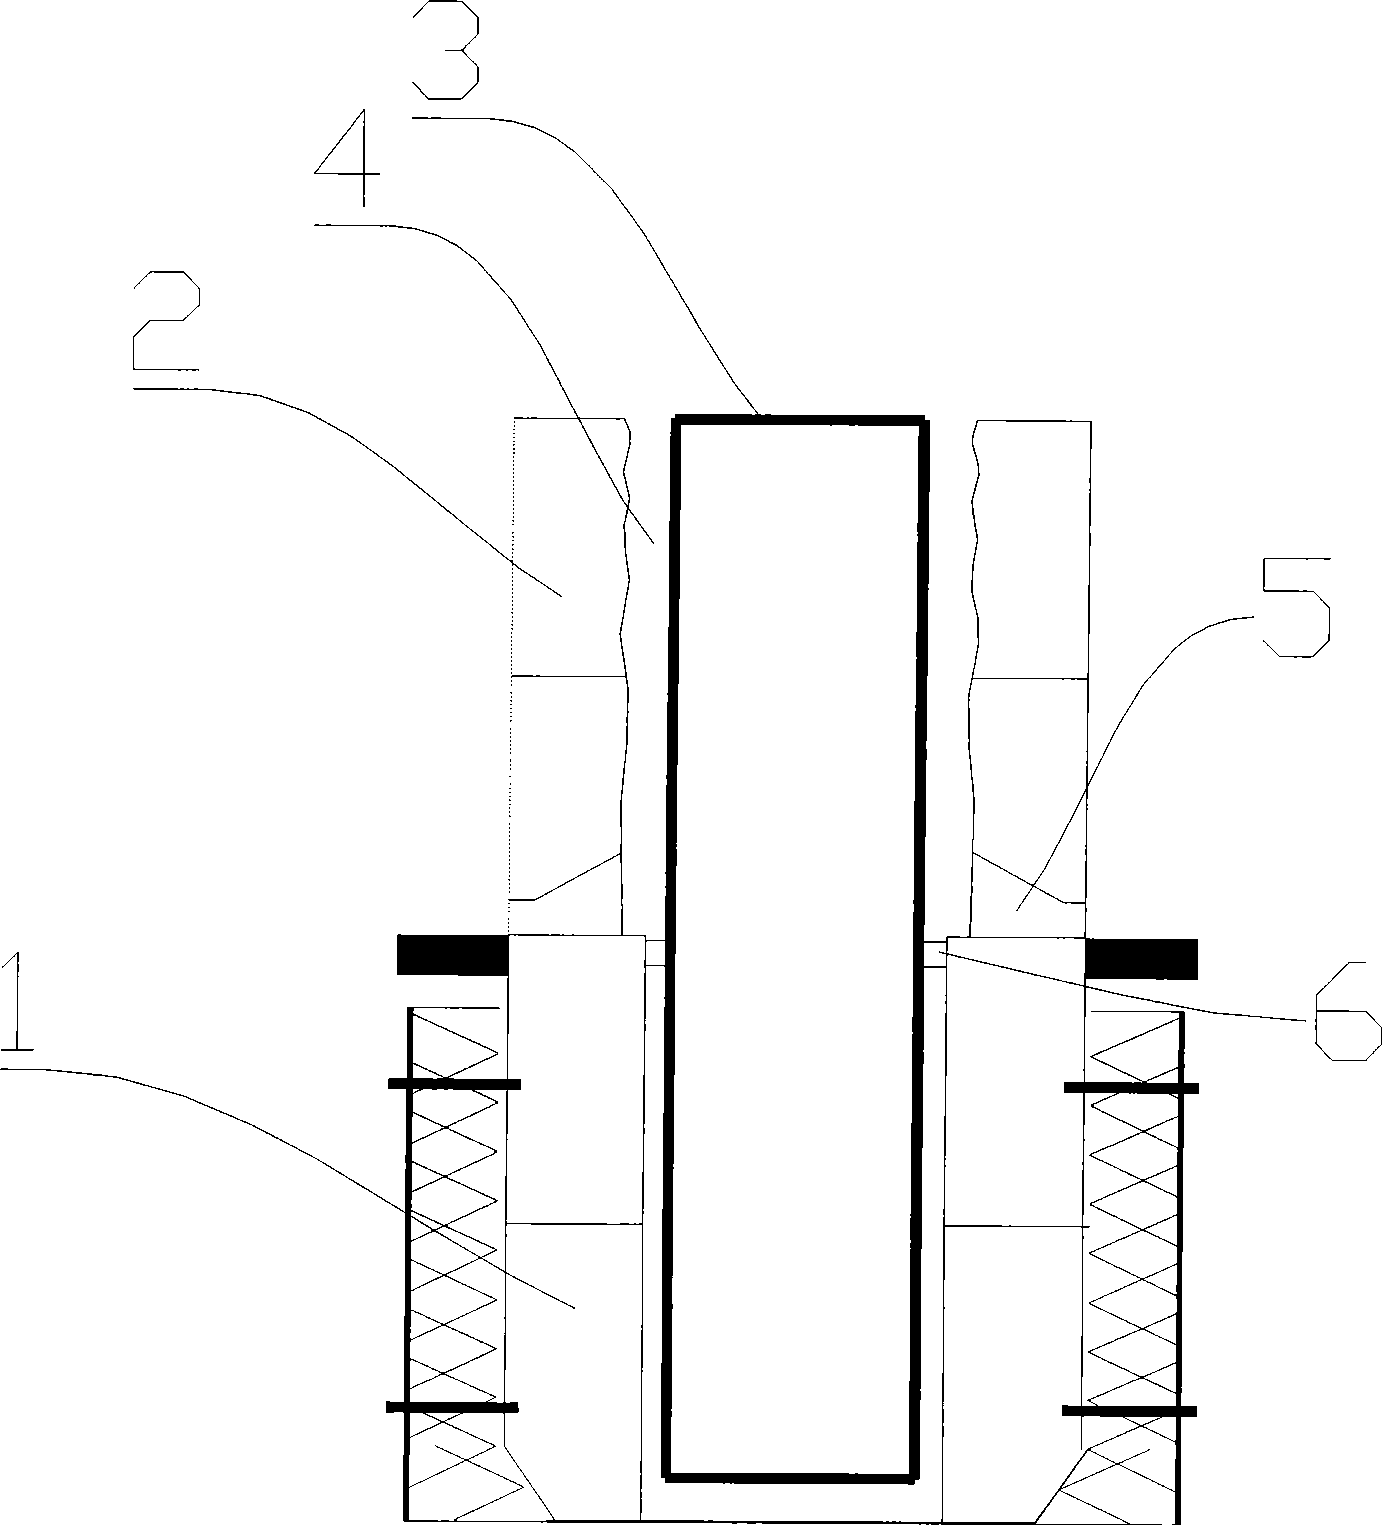 Method for mending circulating pipe